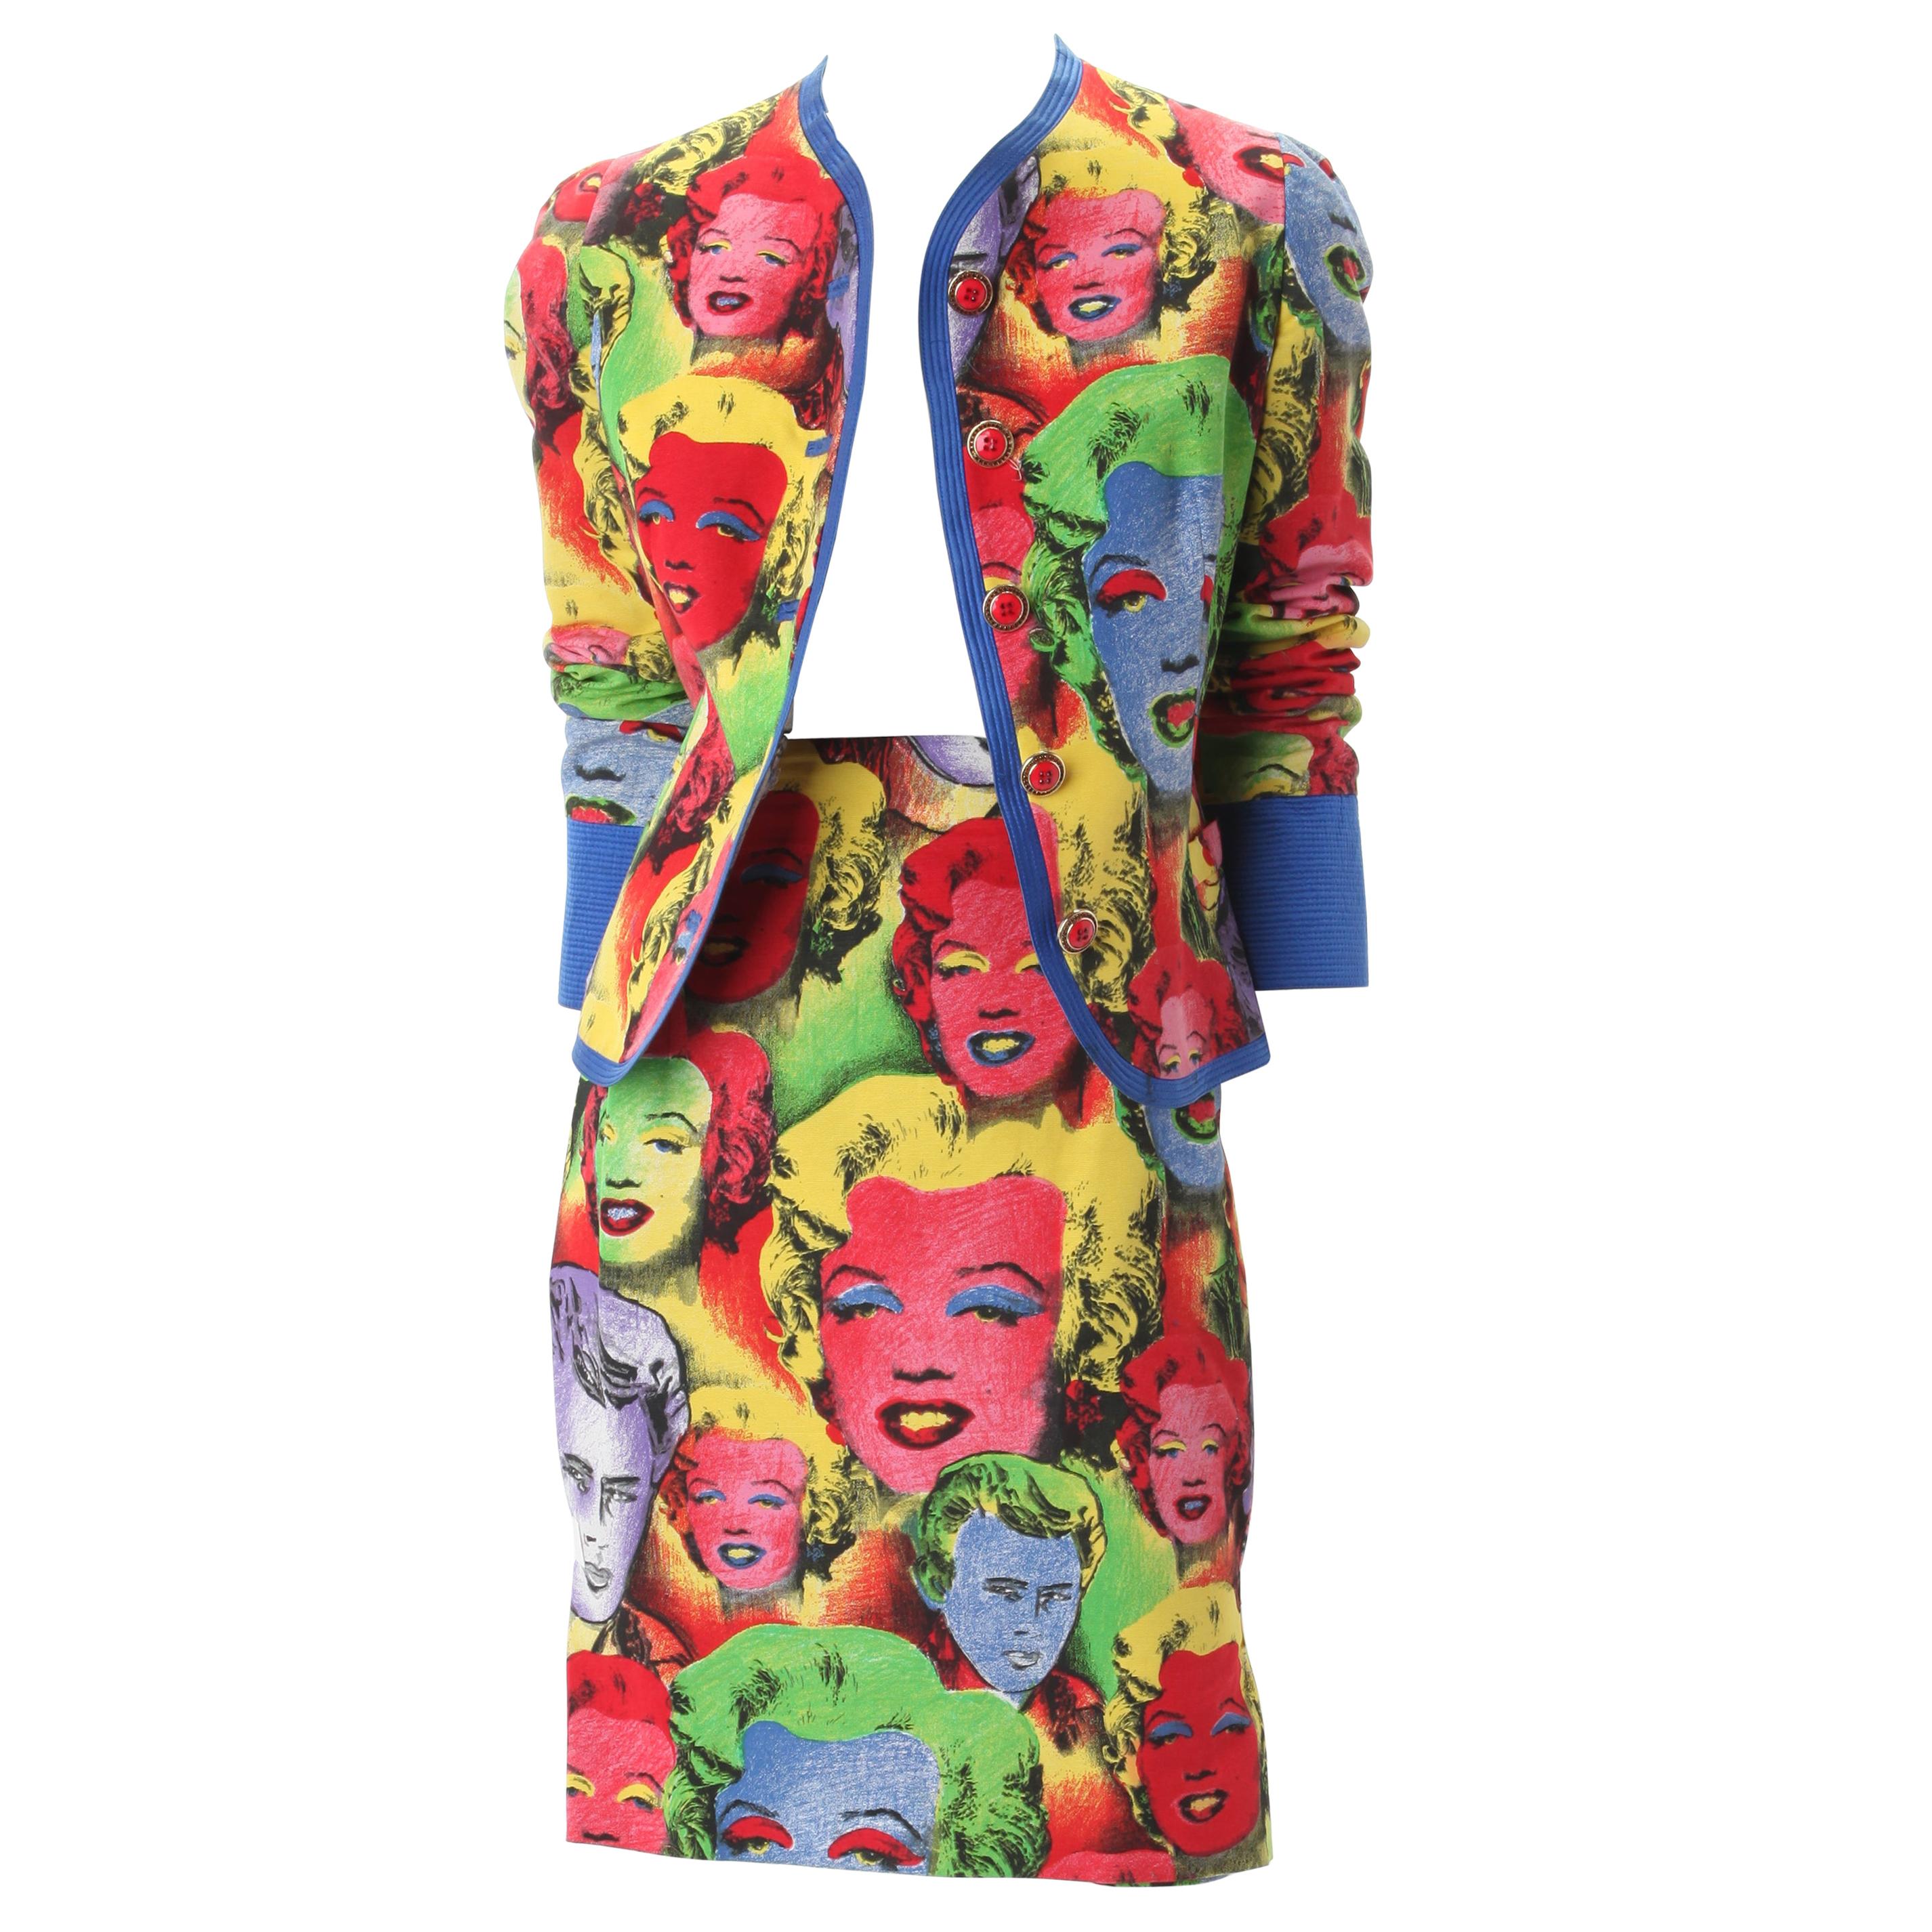 Ensemble veste et jupe à imprimé Andy Warhol de Gianni Versace Couture, vers 1990.